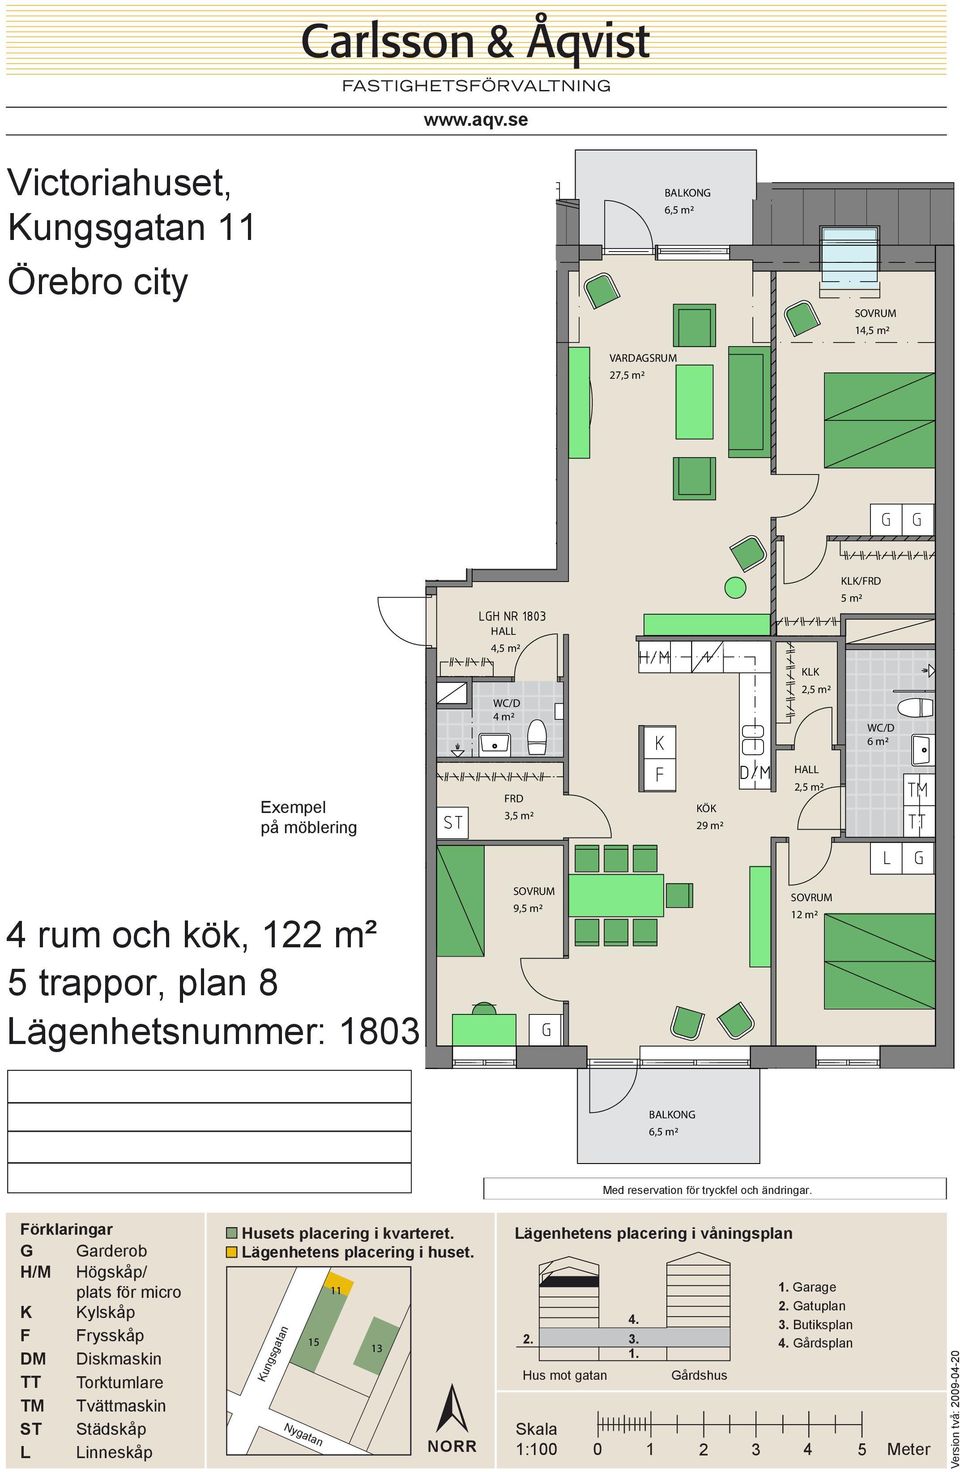 3,5 m² 29 m² 4 rum och kök, 122 m²